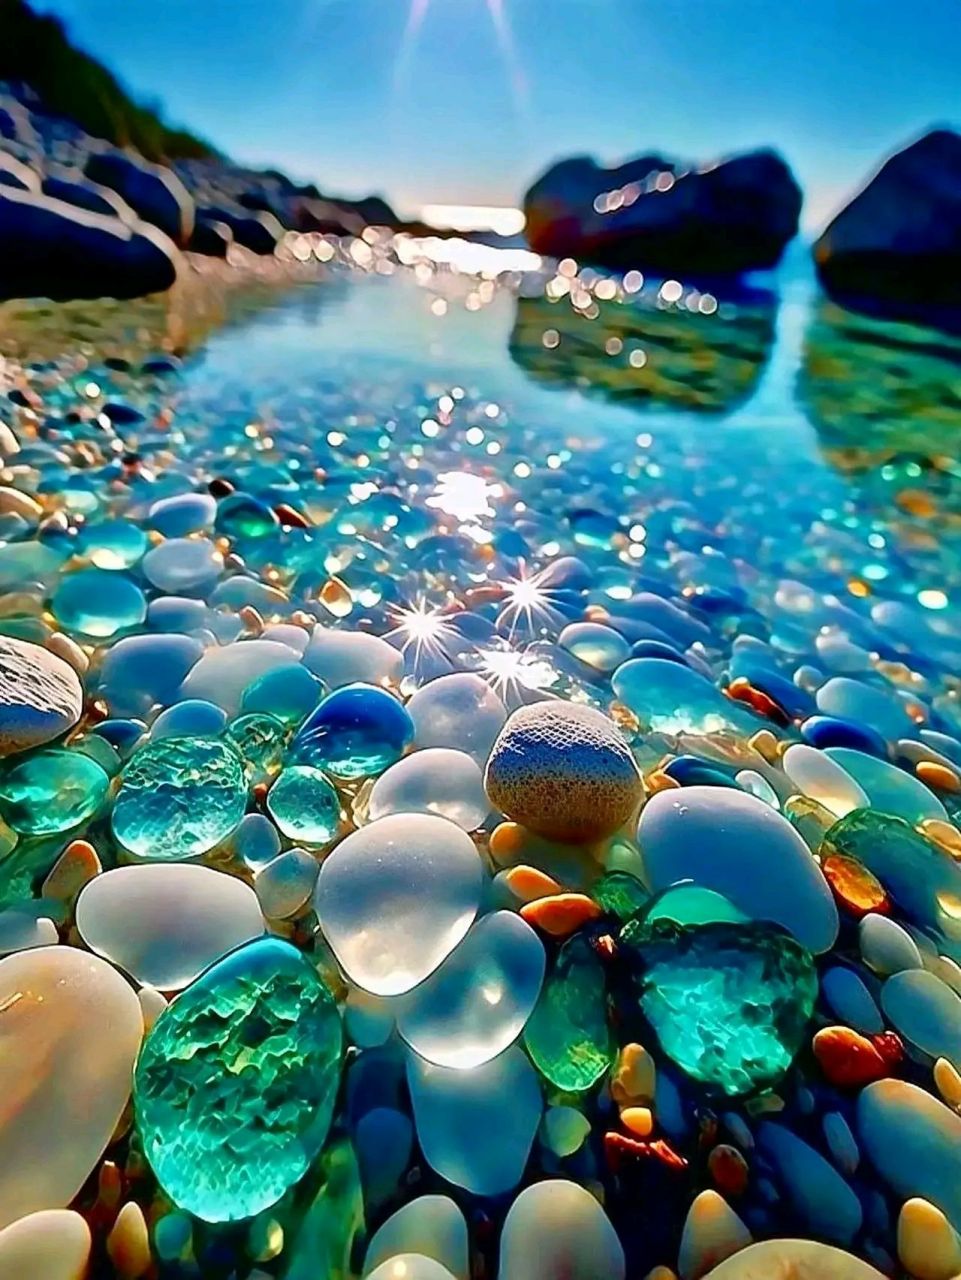 治愈系沙滩七彩石,色彩斑斓,晶莹剔透,璀璨夺目,如同一幅美轮美奂的